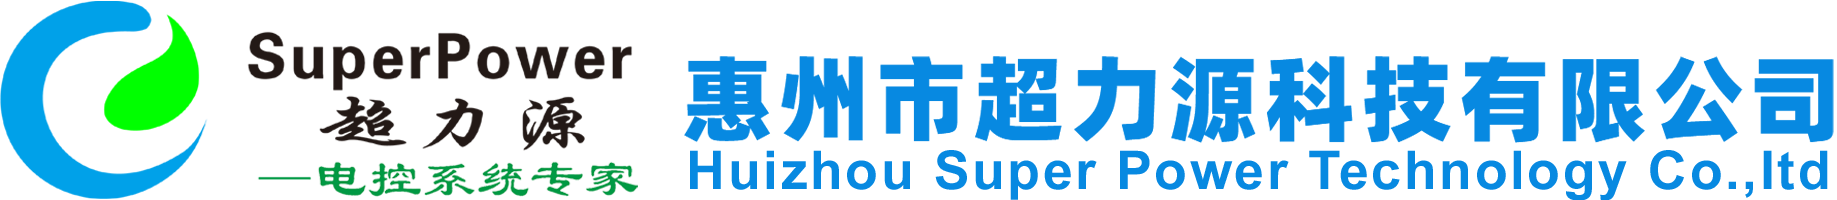 HUIZHOU SUPERPOWER TECHNOLOGY CO.,LTD.